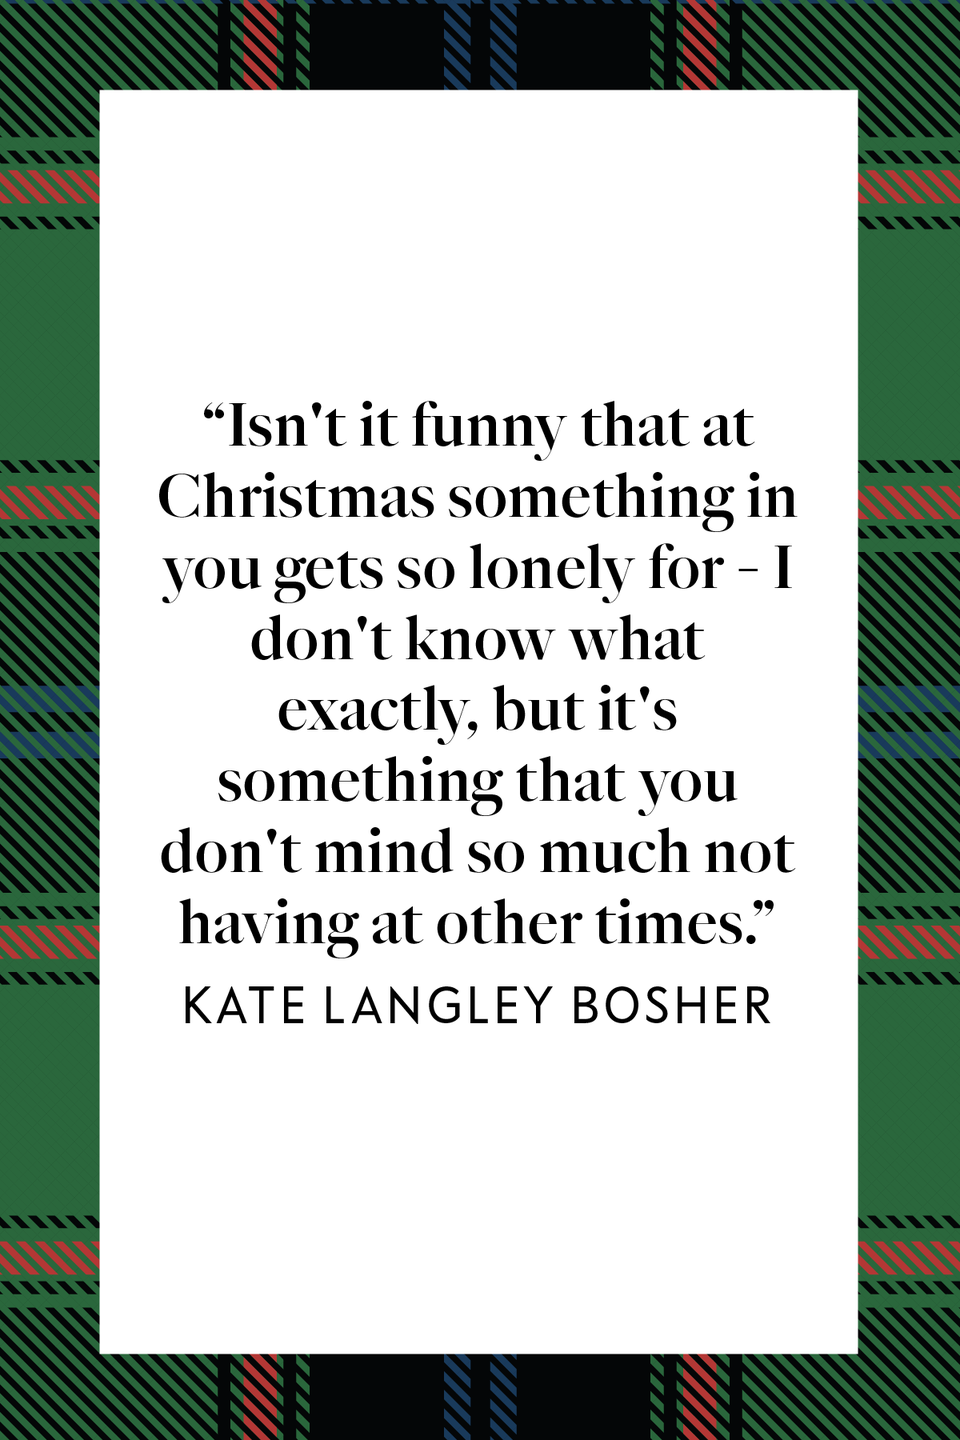 Kate Langley Bosher